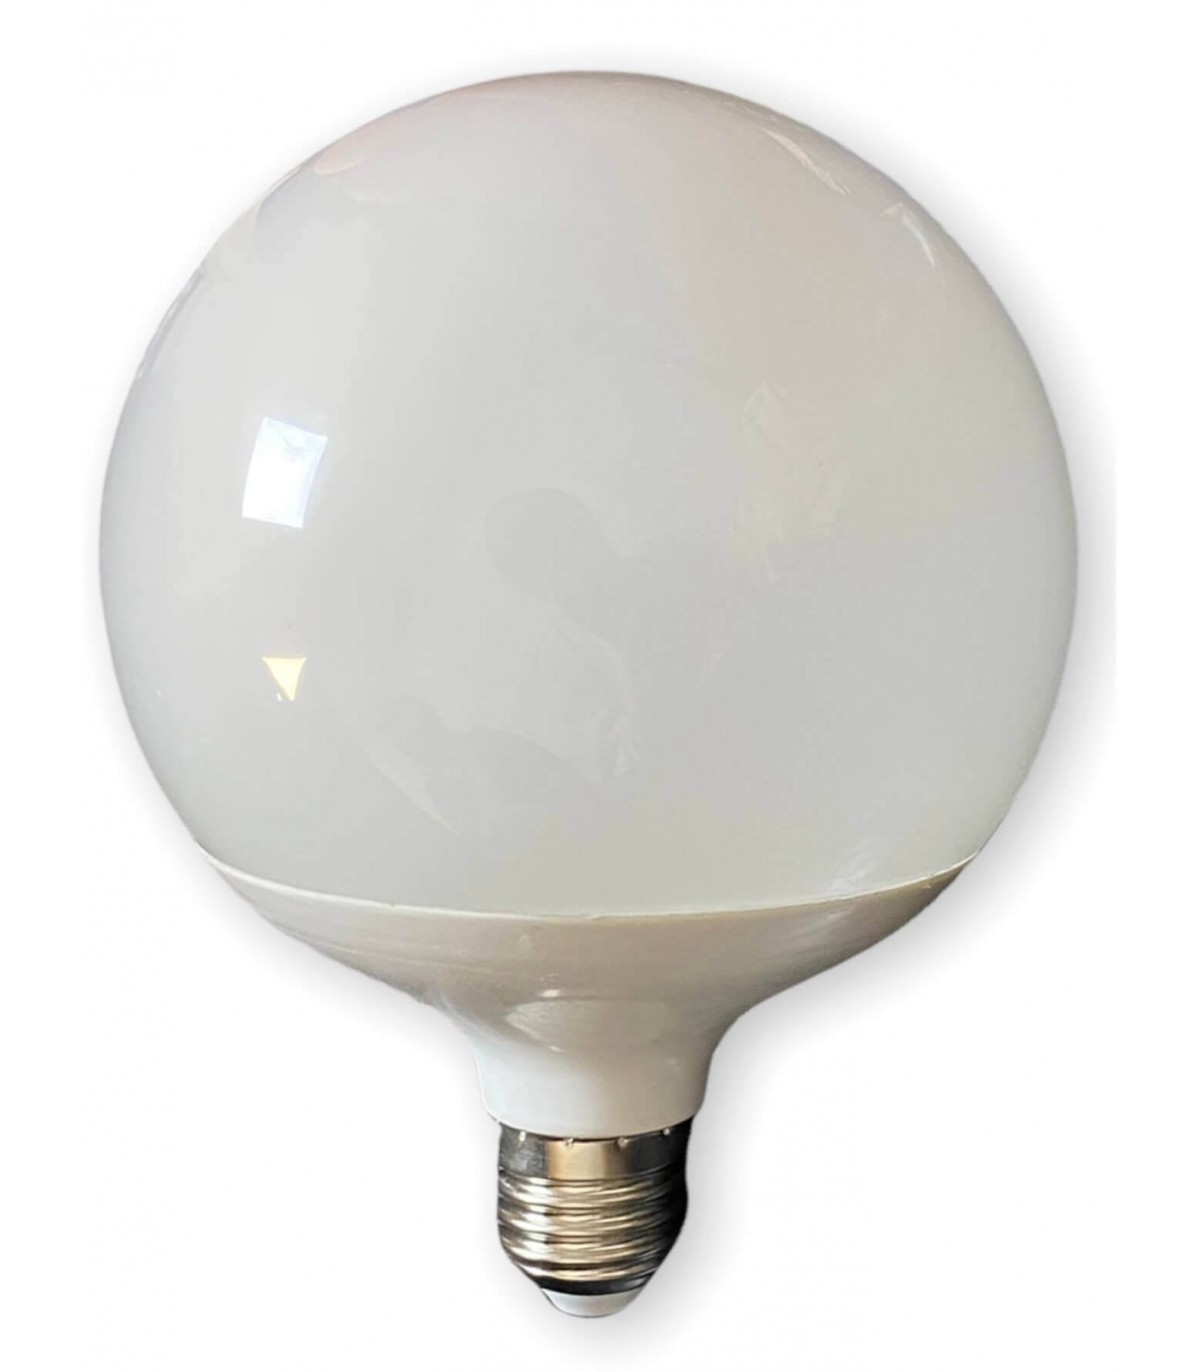 Ampoule LED LUXEN GLOBE G120 17W équivalent 100W 1521lumens Blanc chaud  3000K E27